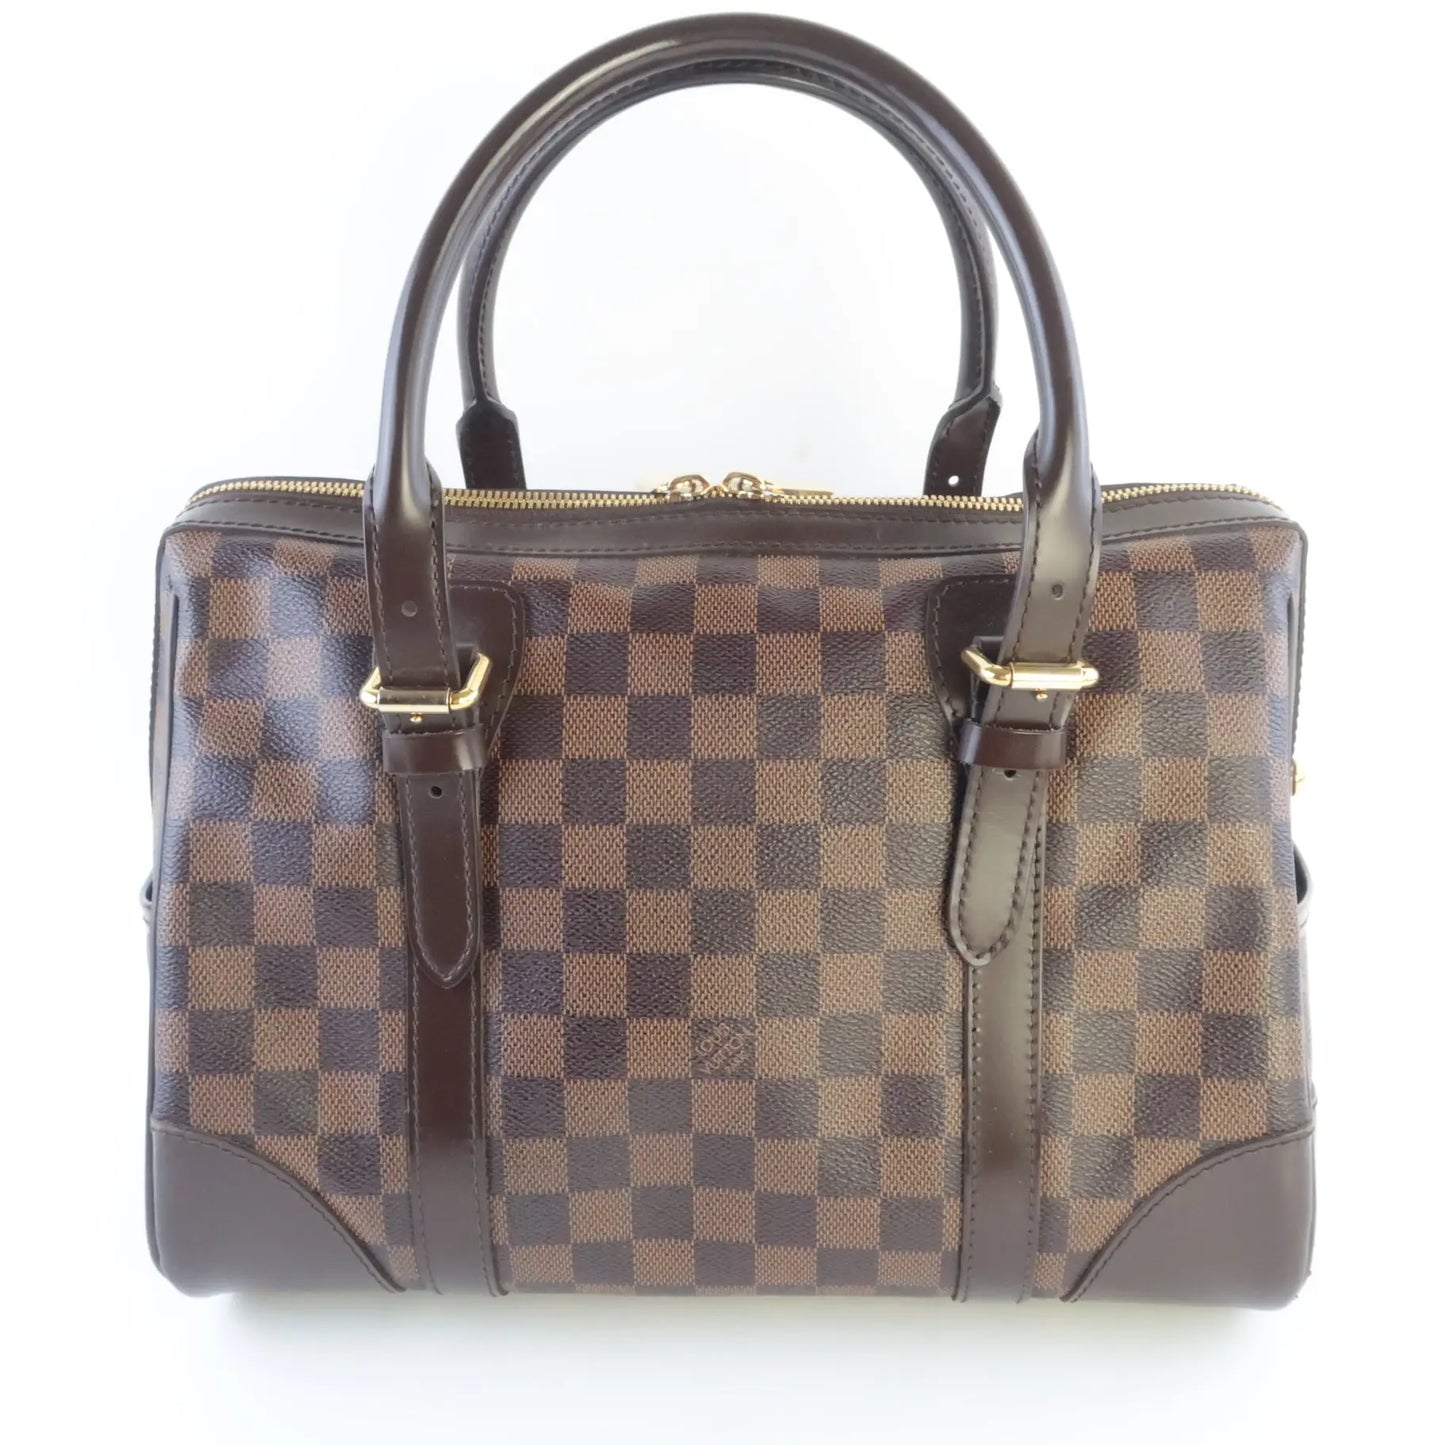 Louis Vuitton Damier Ebene Berkeley Handbag – Bagaholic